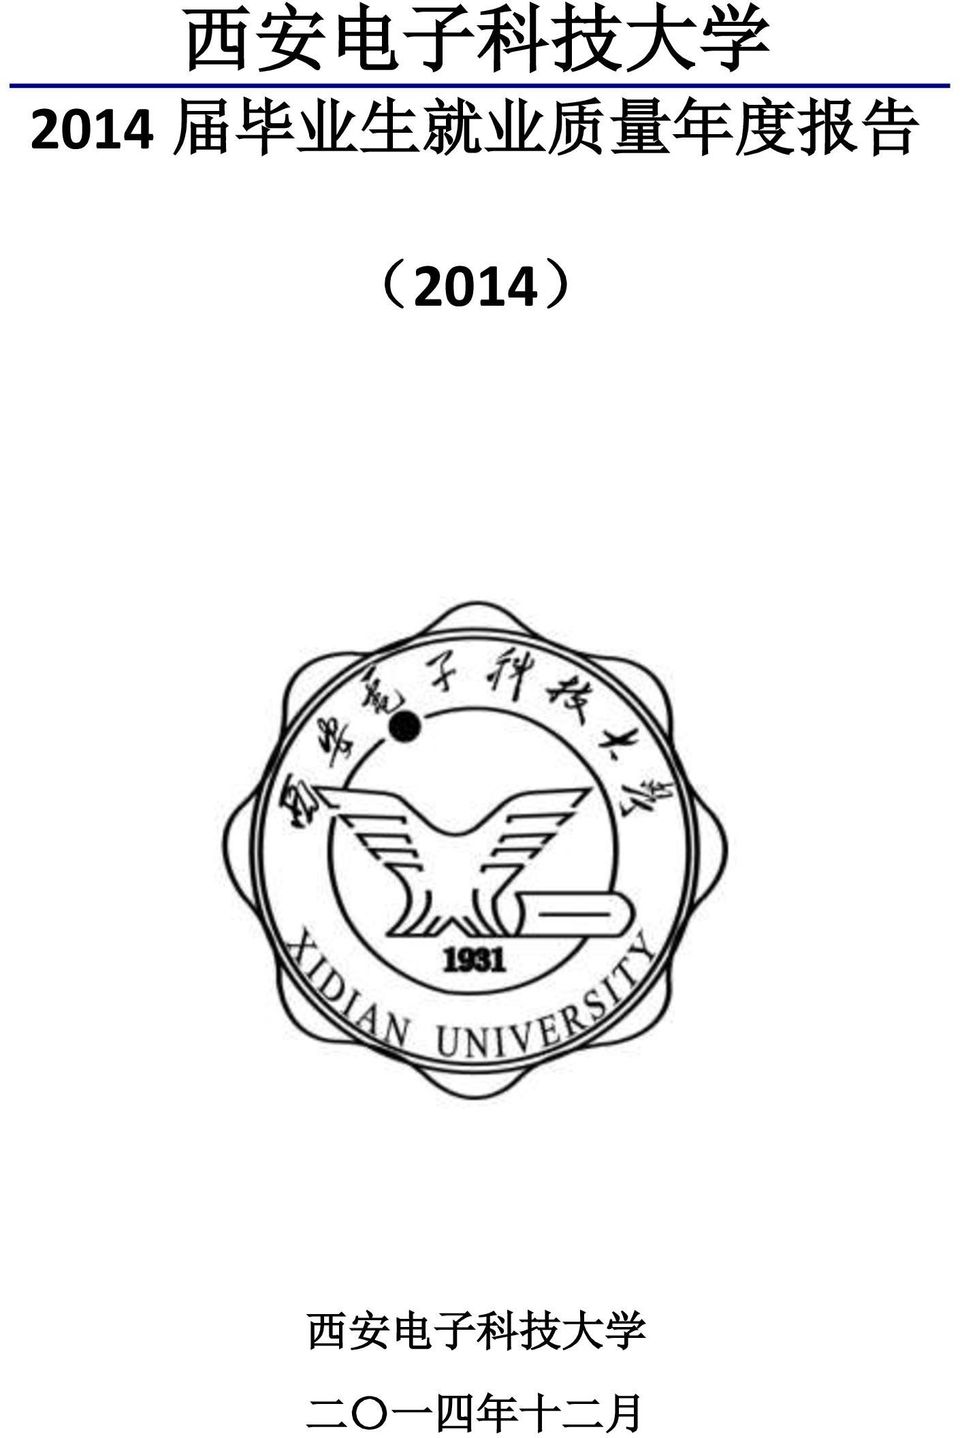 报 告 (2014) 西 安 电 子 科